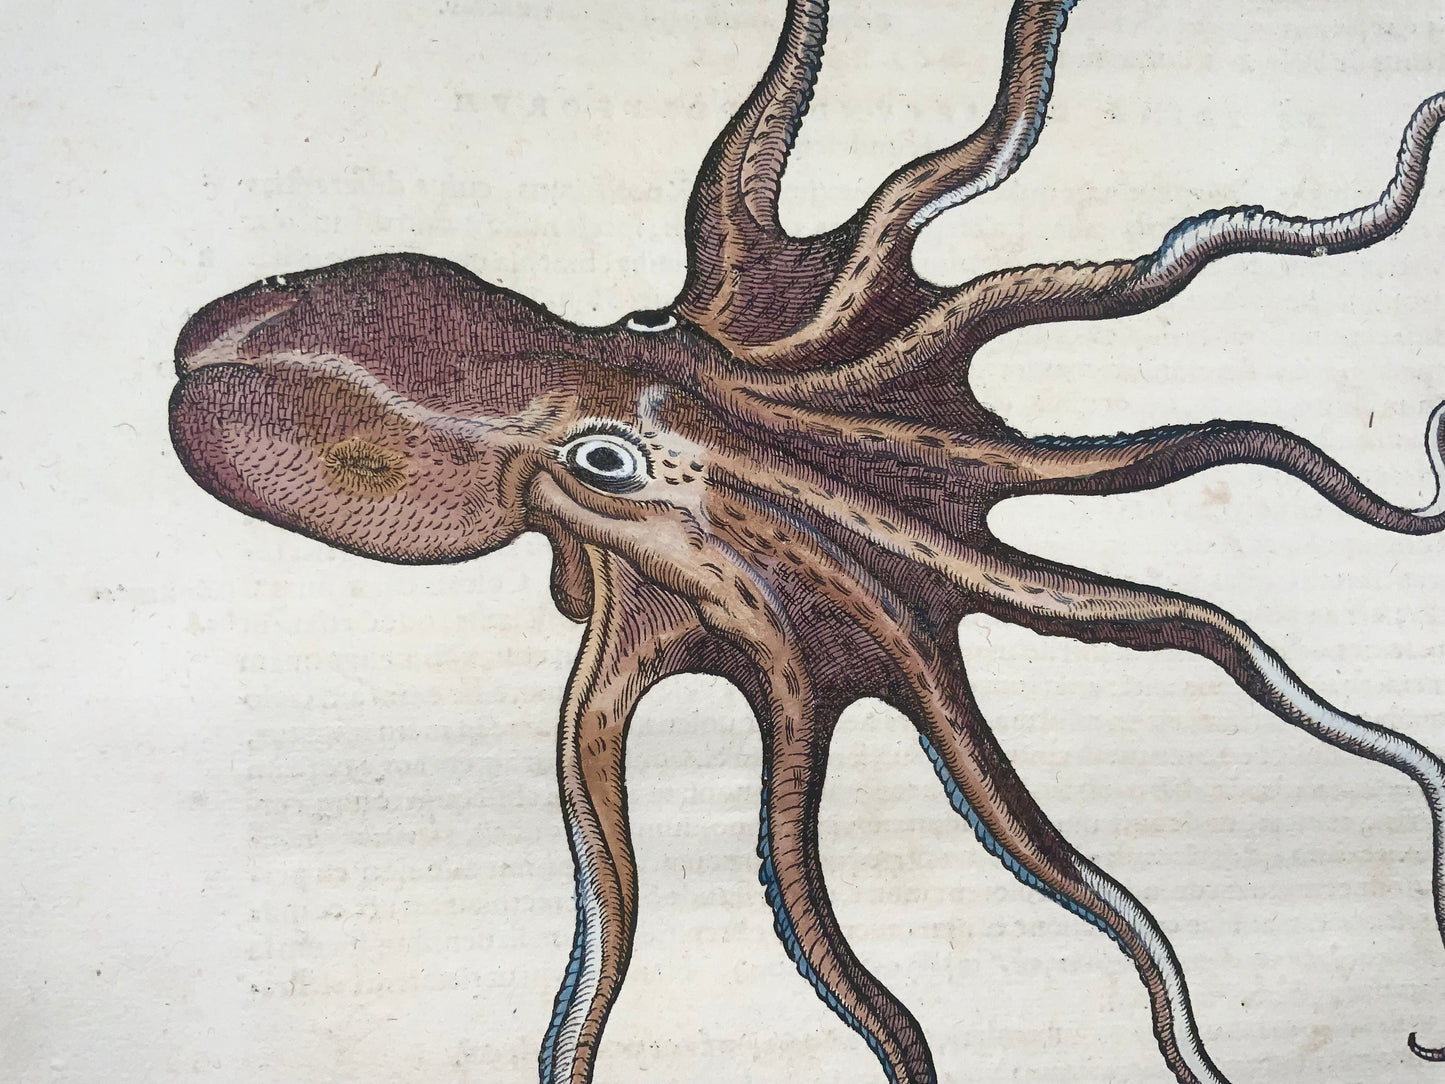 1558 Polpo, Conrad Gesner, folio, xilografia, colorati a mano, Primo Stato, vita marina